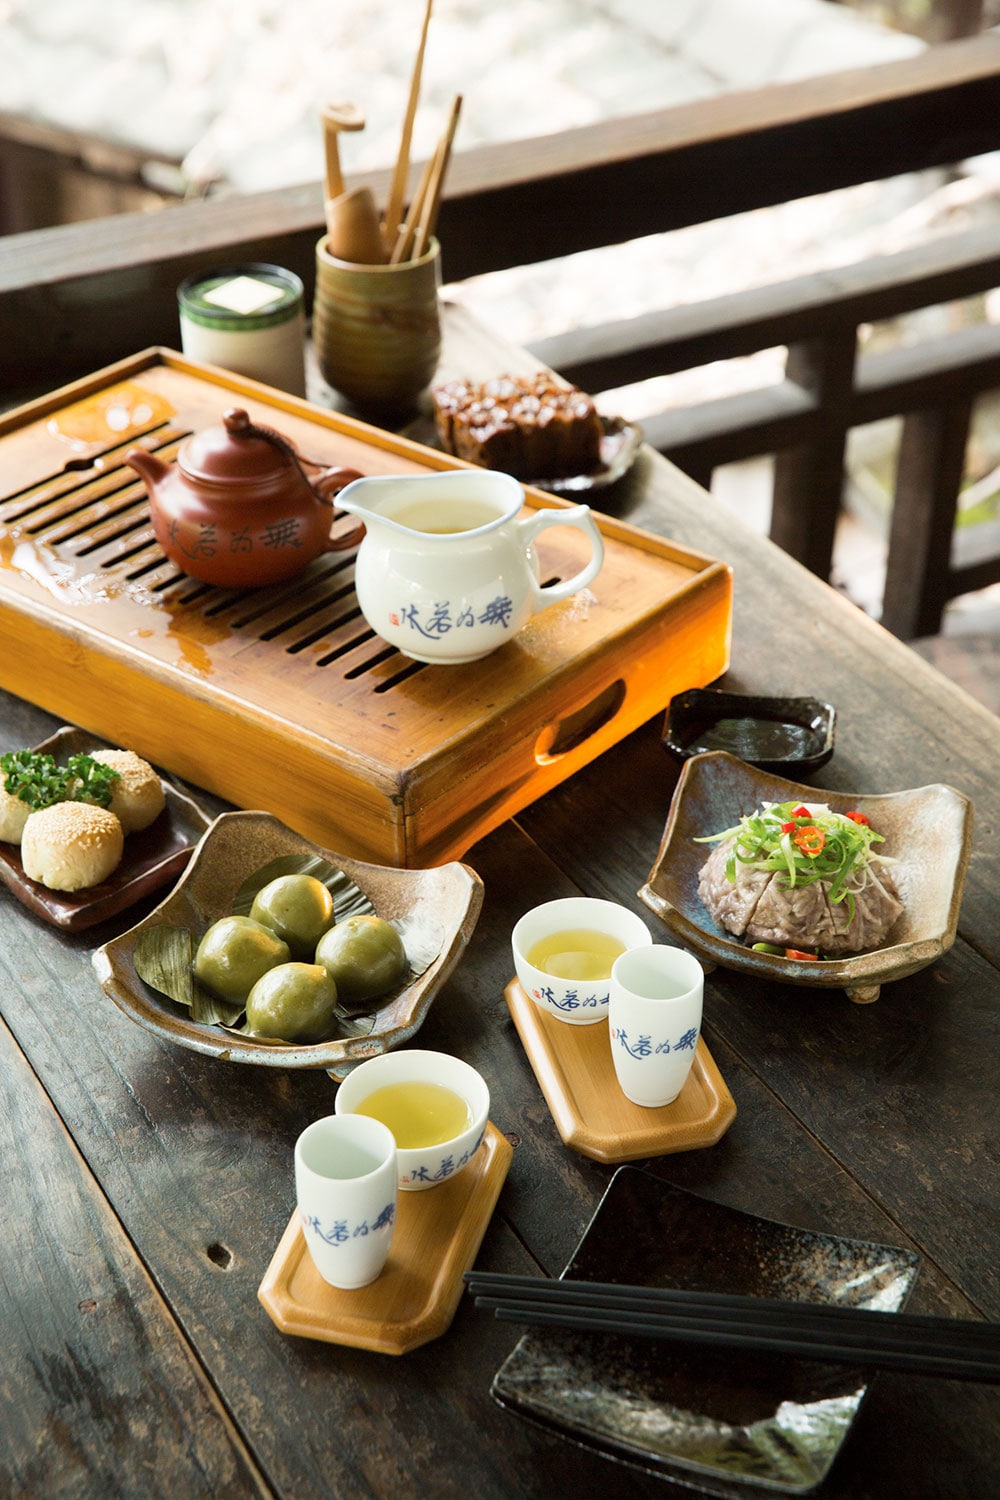 【台中散策】優雅な空気に満たされている茶藝館「無為草堂」。